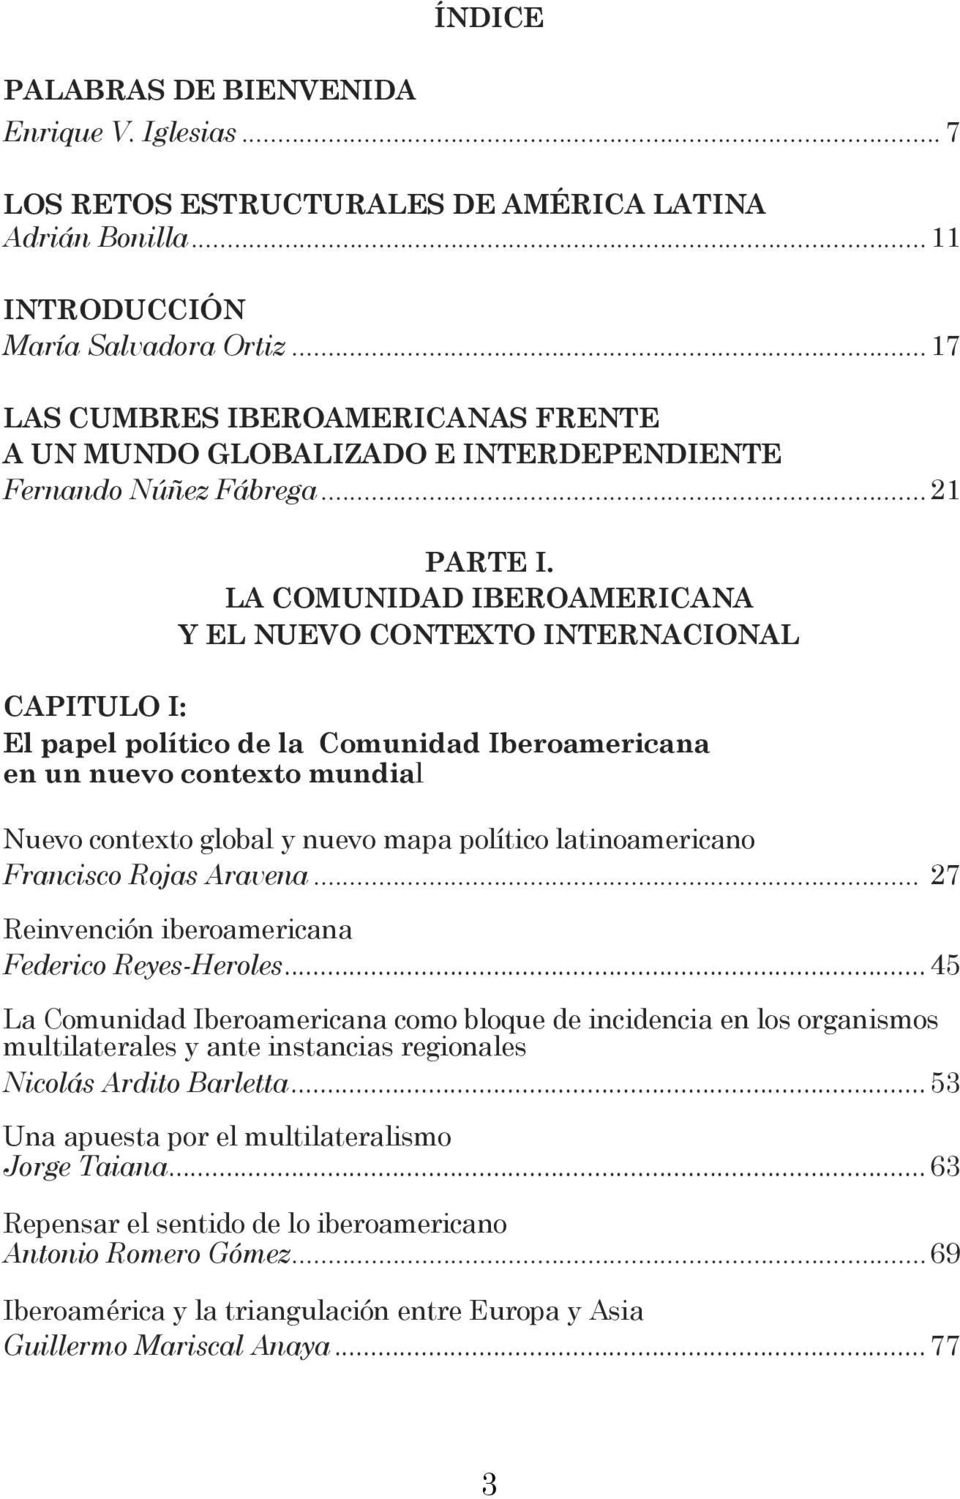 LA COMUNIDAD IBEROAMERICANA Y EL NUEVO CONTEXTO INTERNACIONAL CAPITULO I: El papel político de la Comunidad Iberoamericana en un nuevo contexto mundial Nuevo contexto global y nuevo mapa político